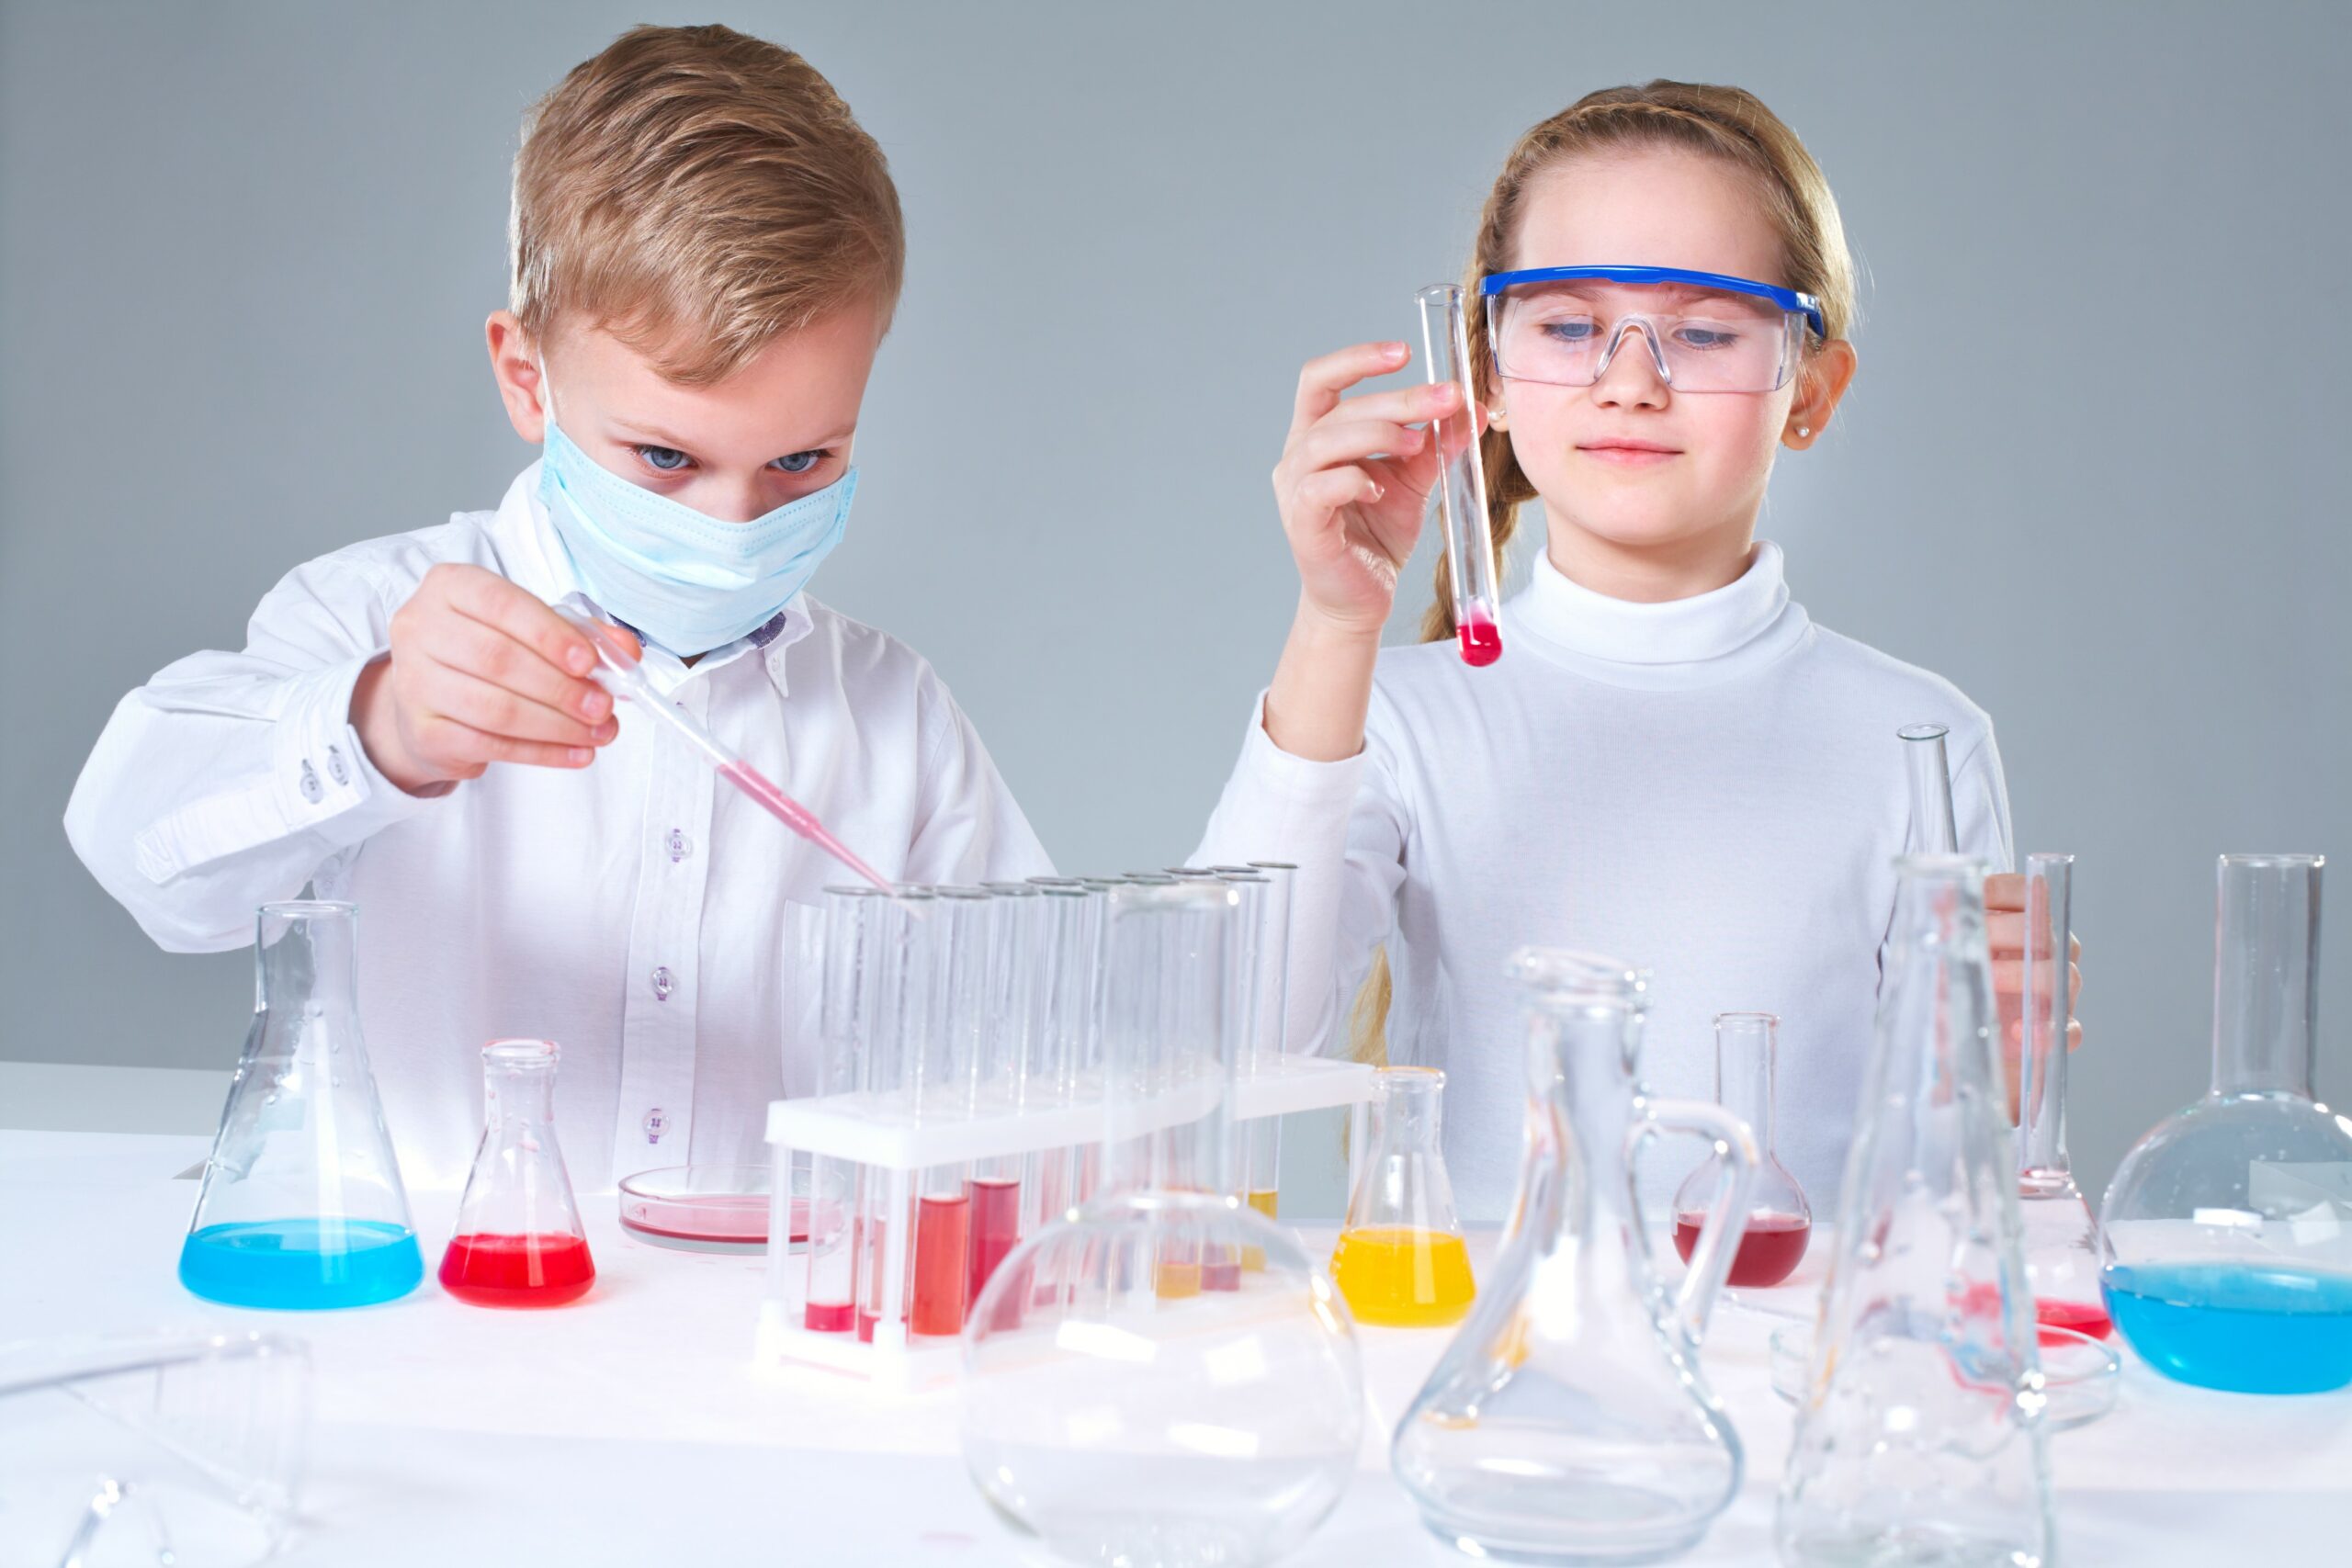 Comment éveiller la curiosité scientifique de vos enfants ? - Les